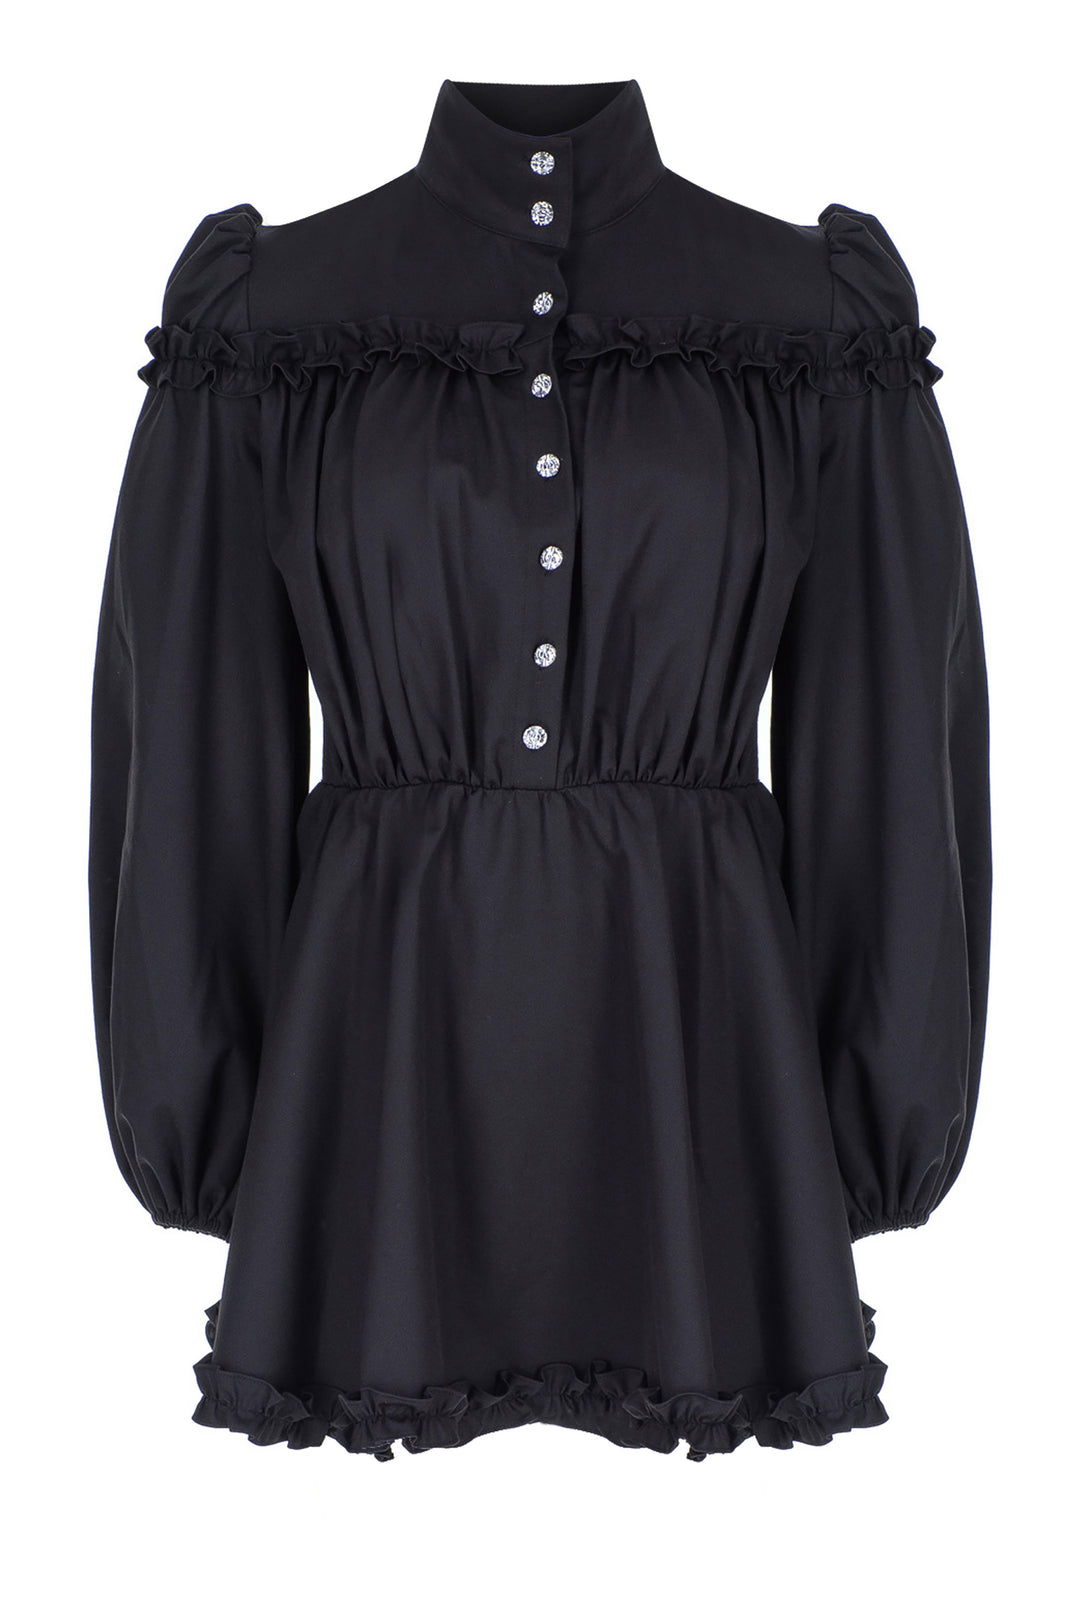 Siyah Balıkçı-Yaka, Uzun-Kol, Swarovski-Detaylı Mini Elbise